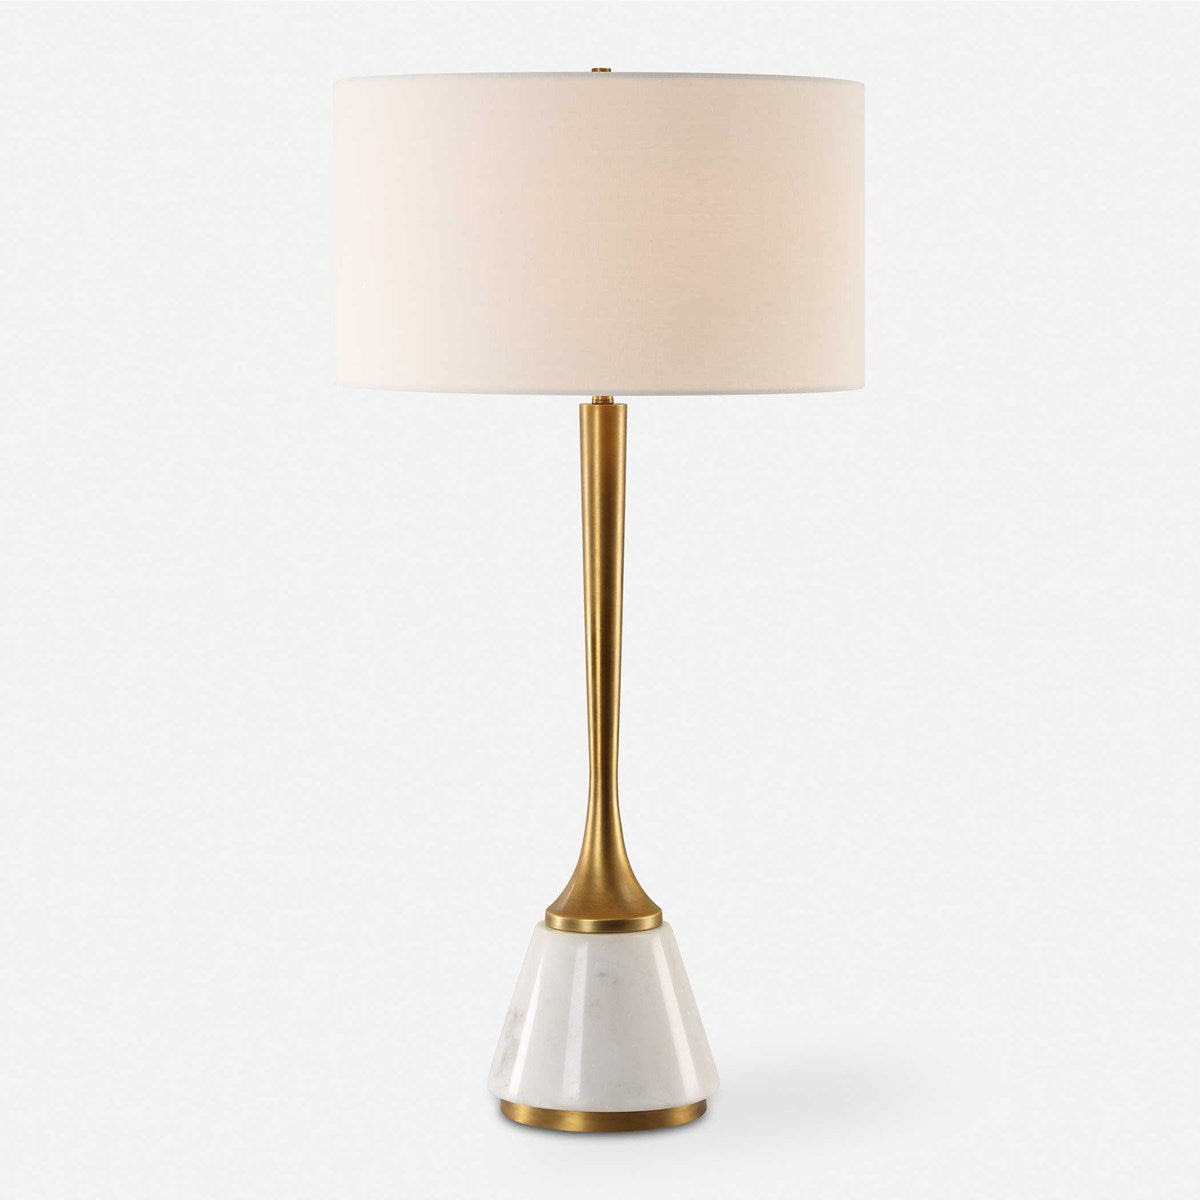 Uttermost - 30365 - One Light Table Lamp - Avola - Antique Brass